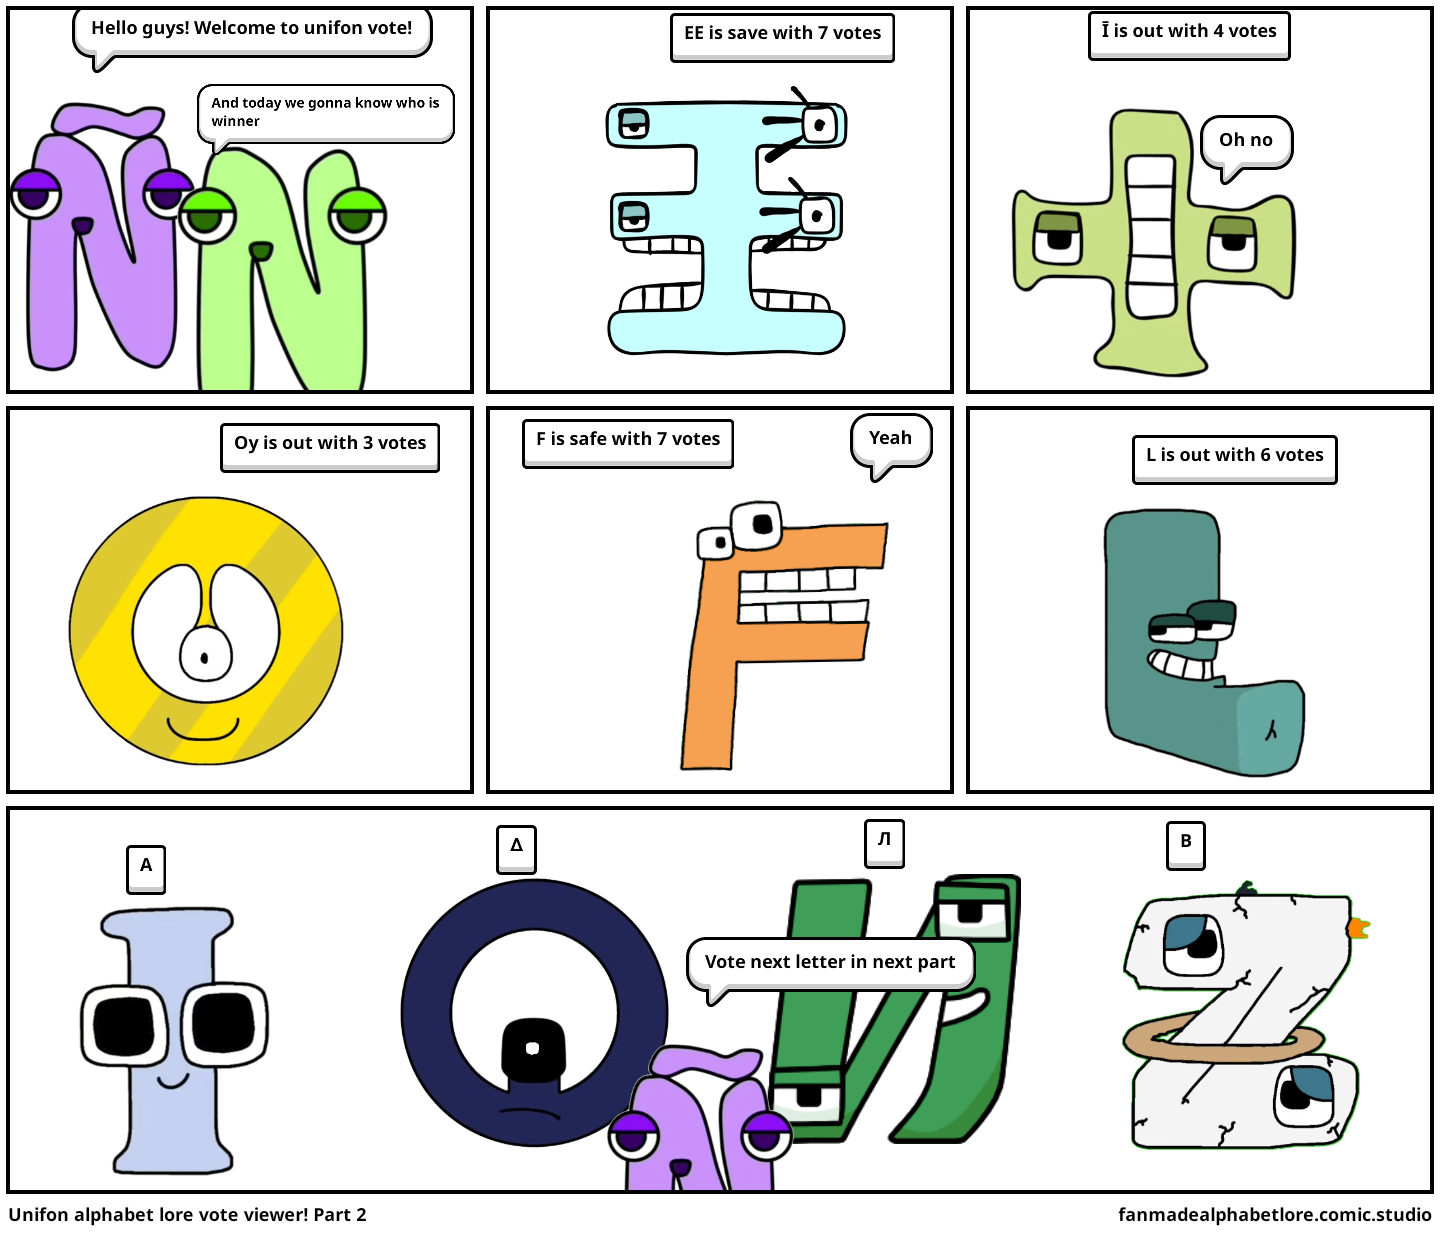 Unifon alphabet lore vote viewer! Part 2 - Comic Studio